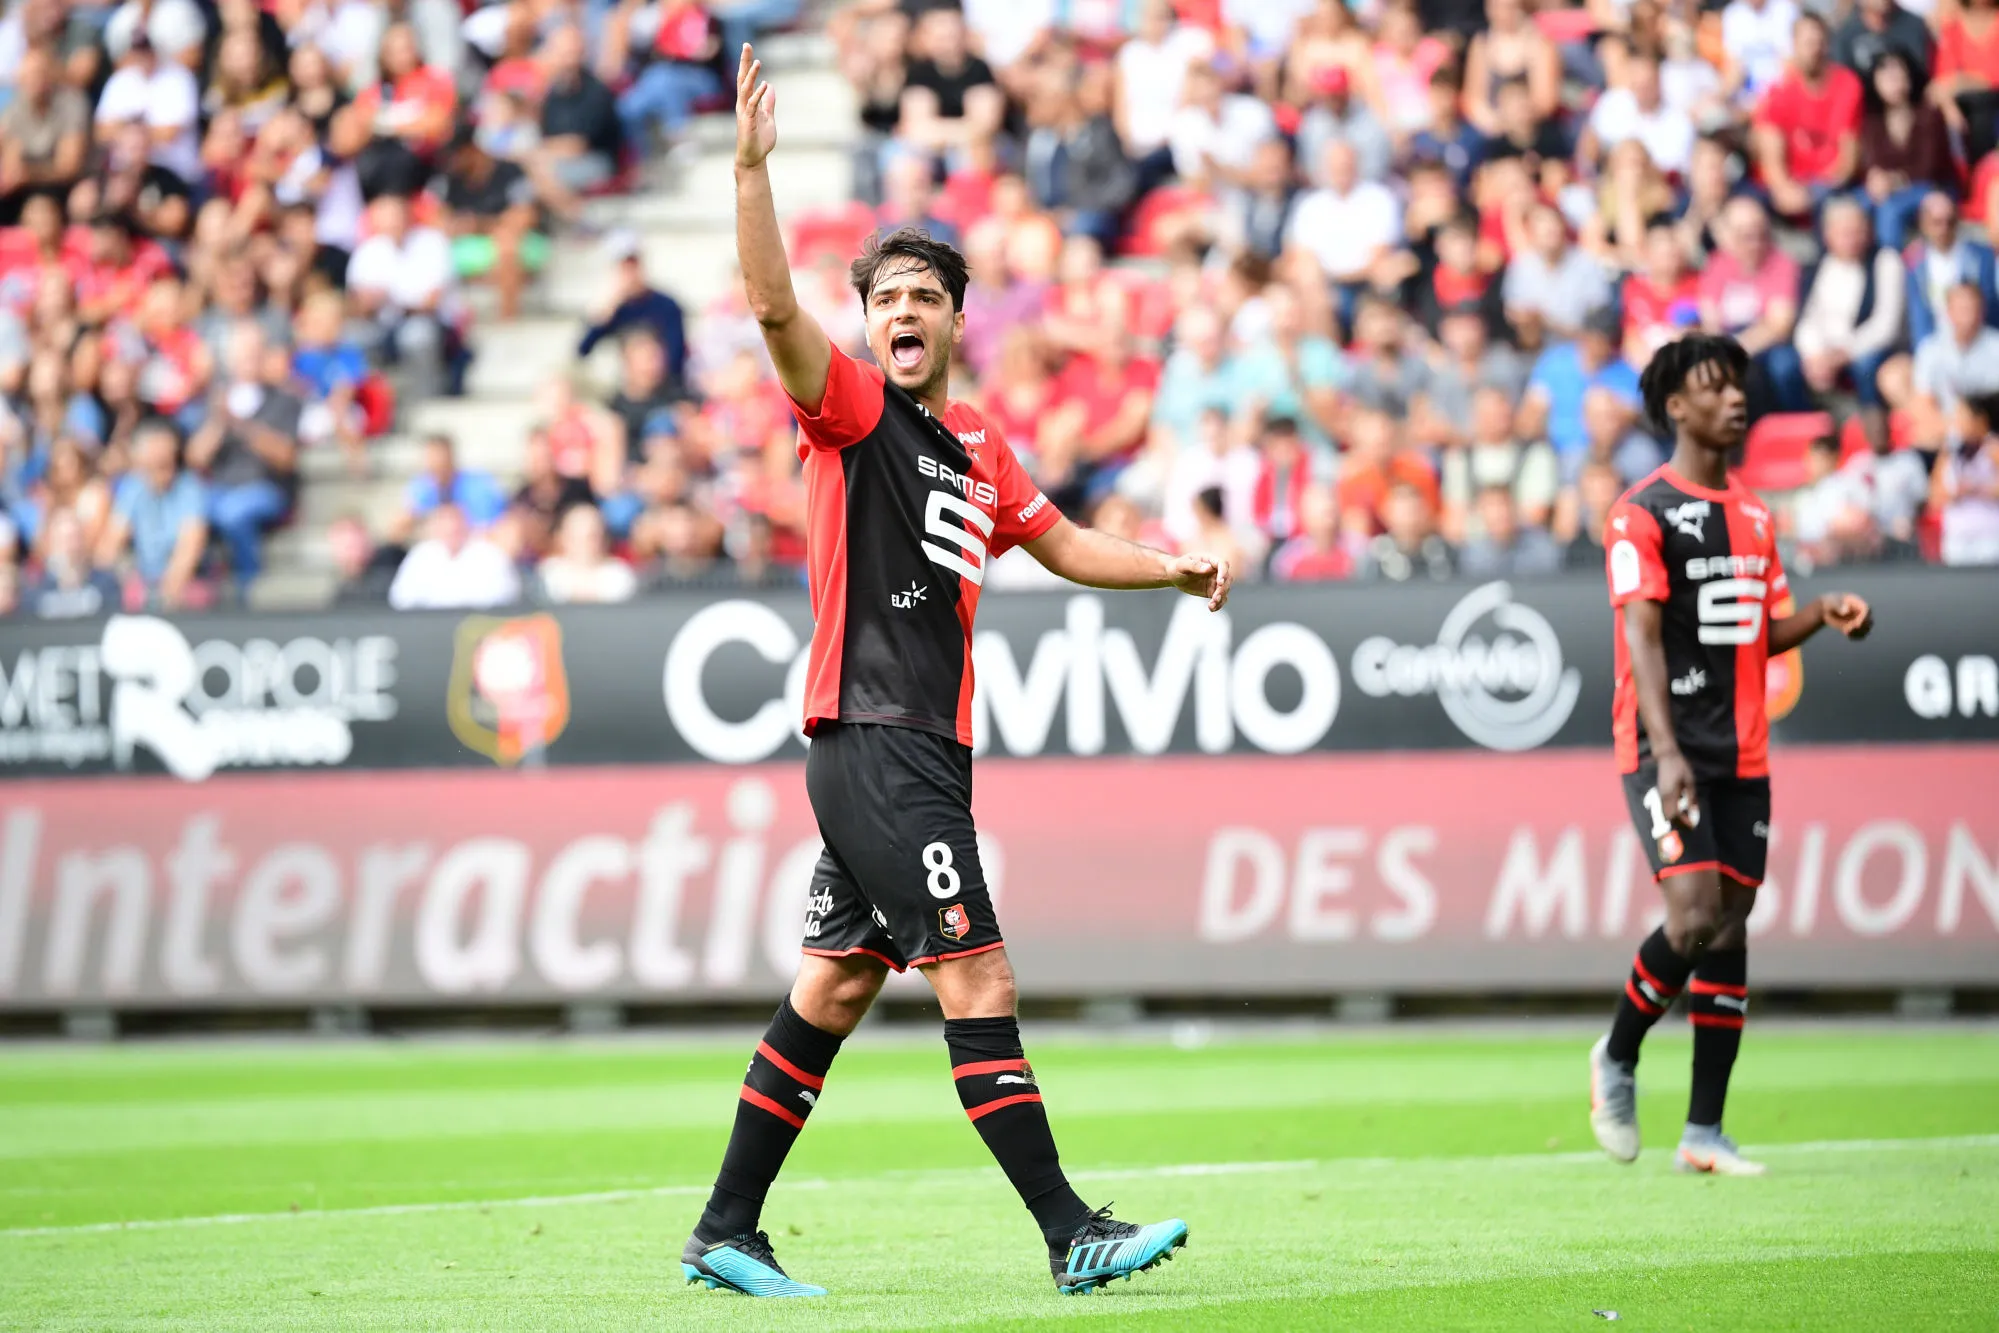 Pronostic Rennes Reims : Analyse, prono et cotes du match de Ligue 1